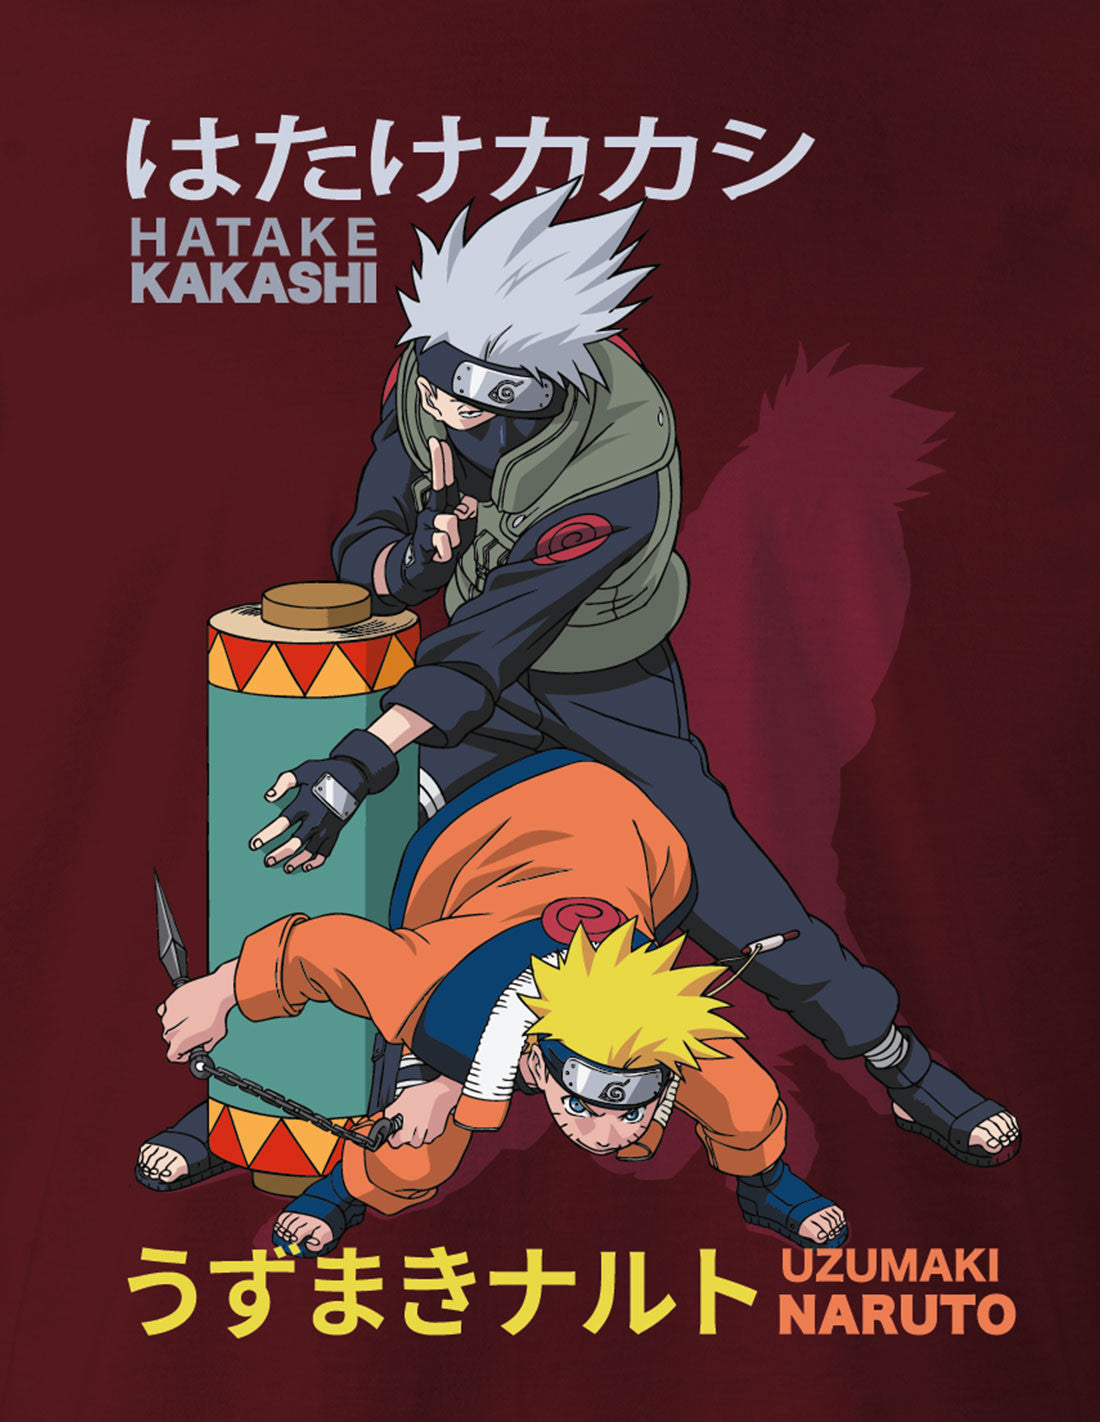 Naruto t-shirt - Kakashi &amp; Naruto